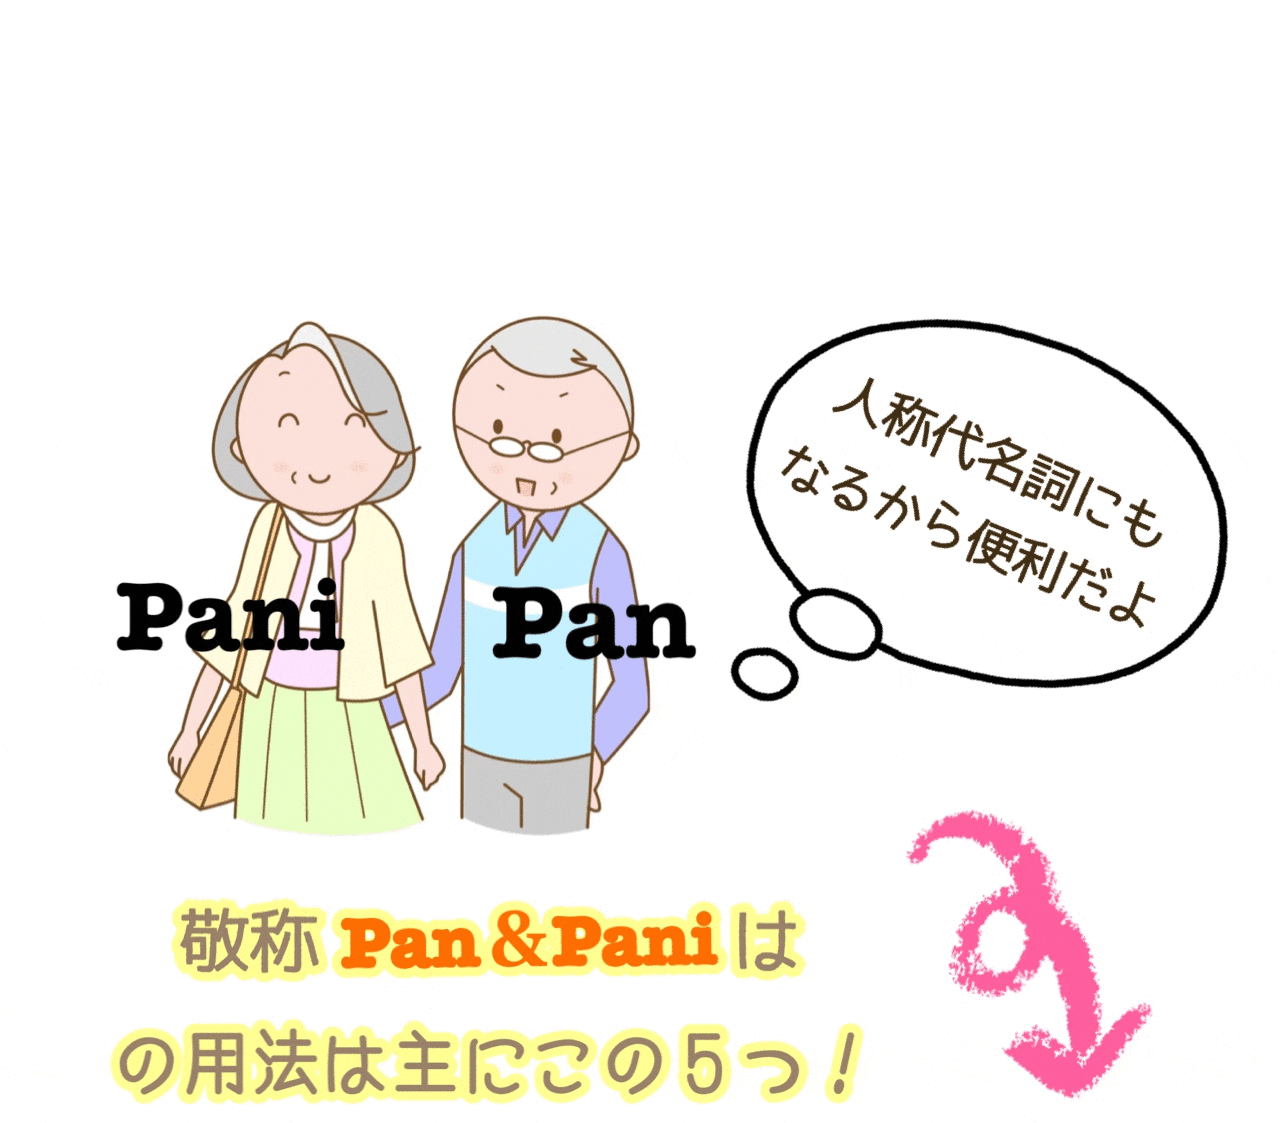 敬称Pan/Paniを使うシーン